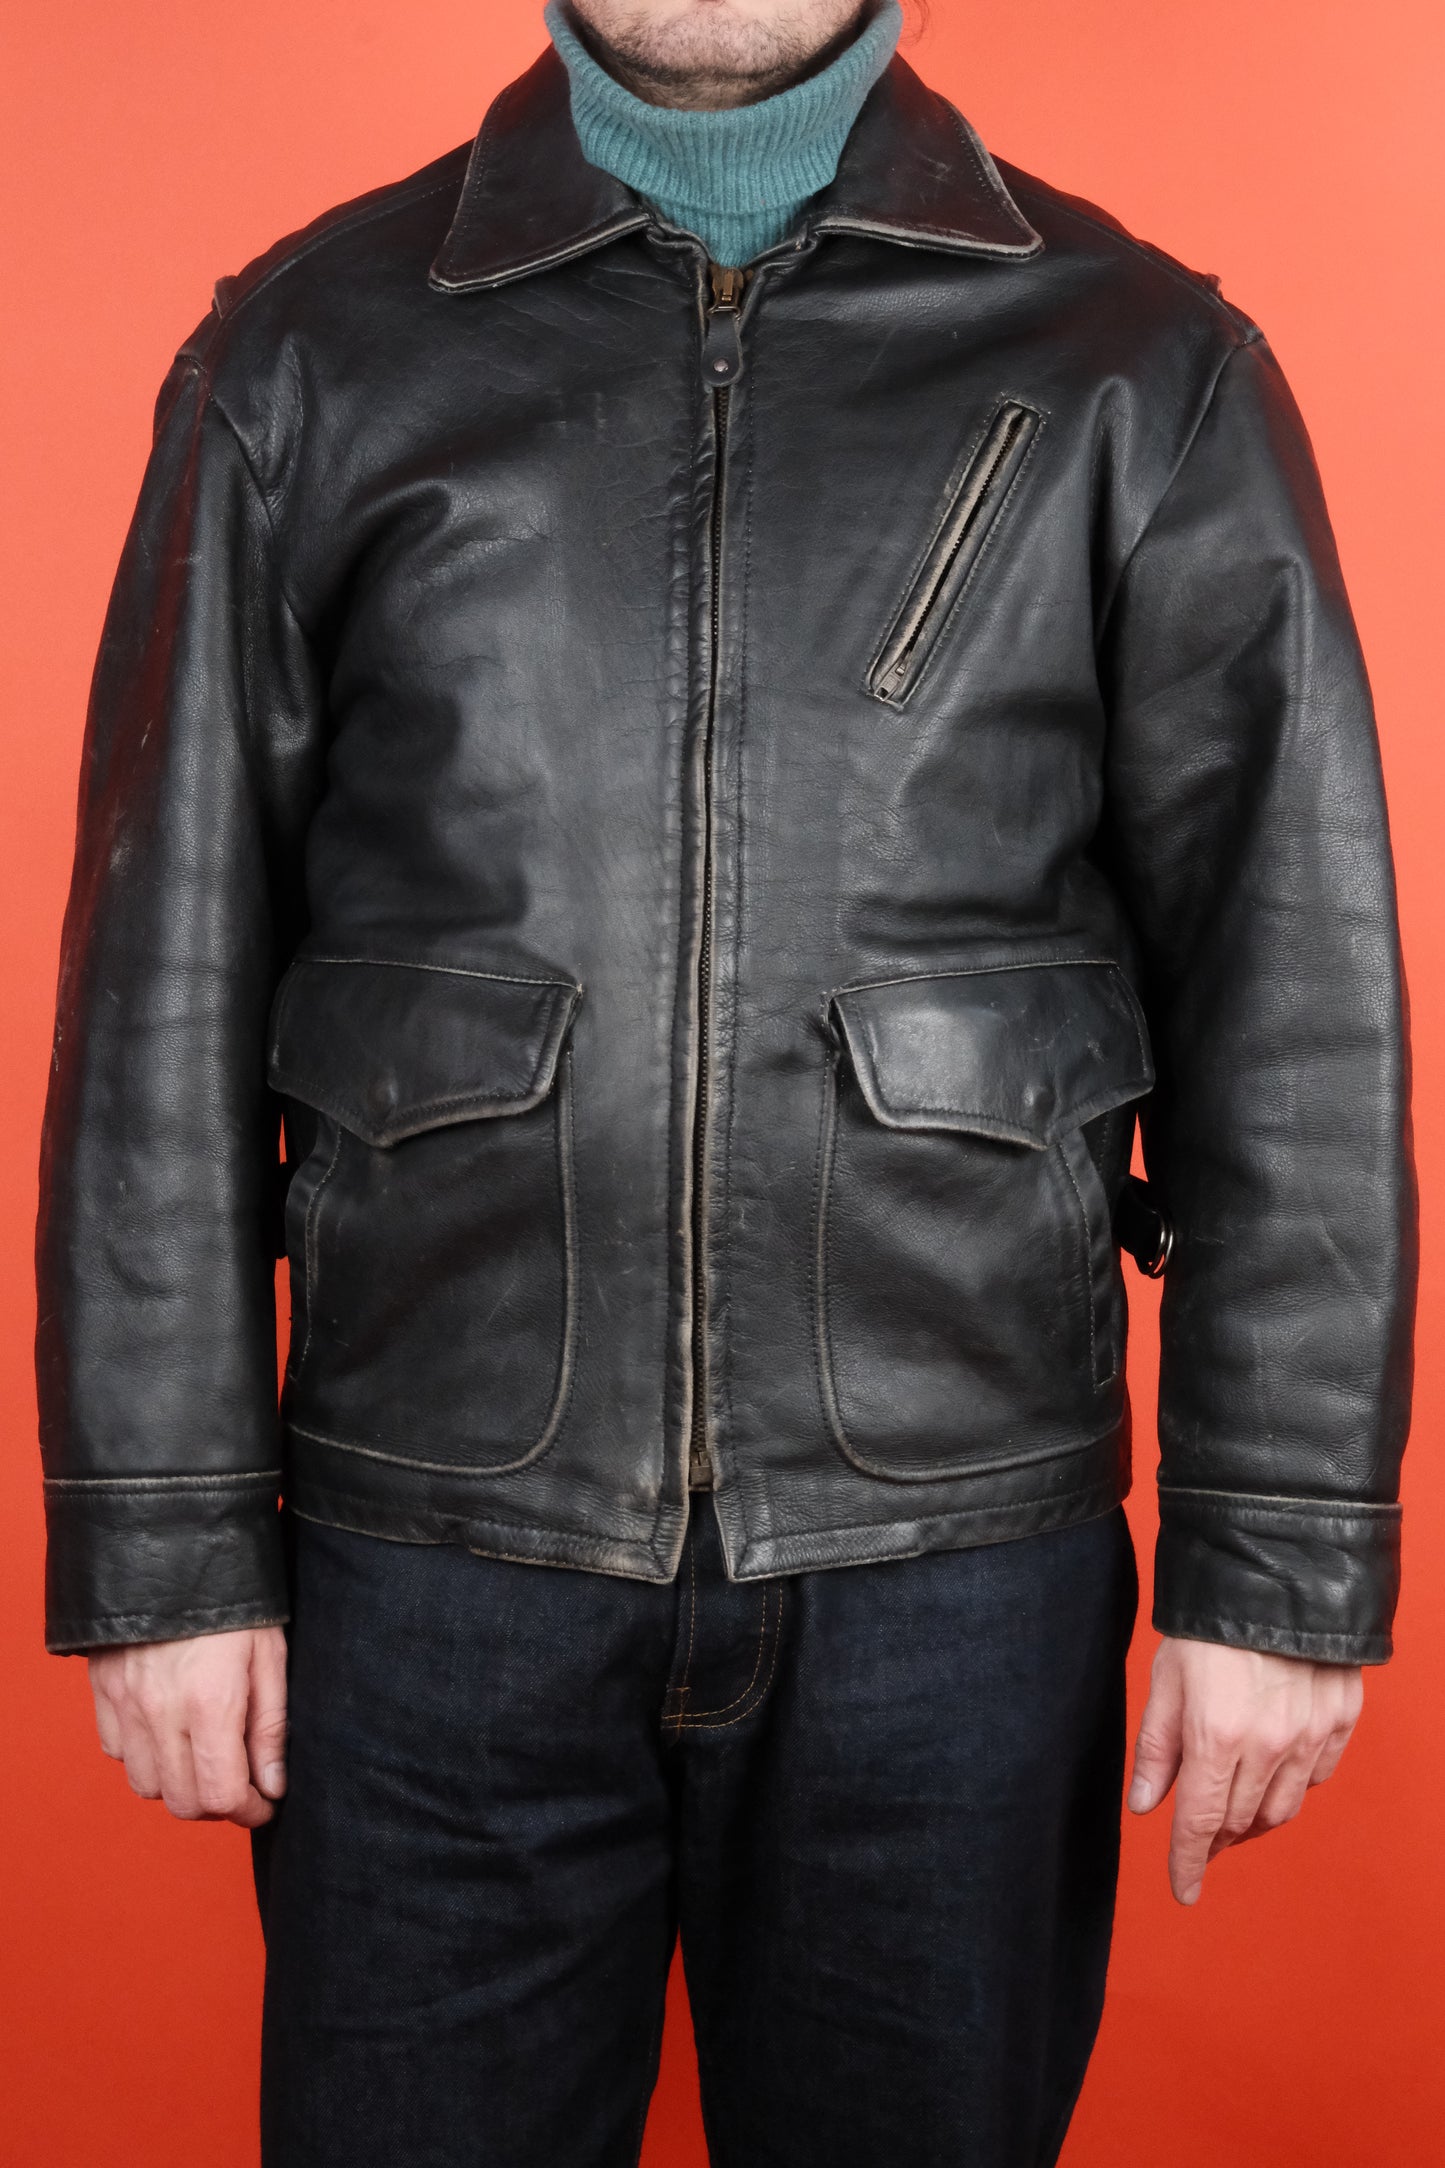 Rifle & Co. Black Leather Jacket 'M' - vintage clothing clochard92.com